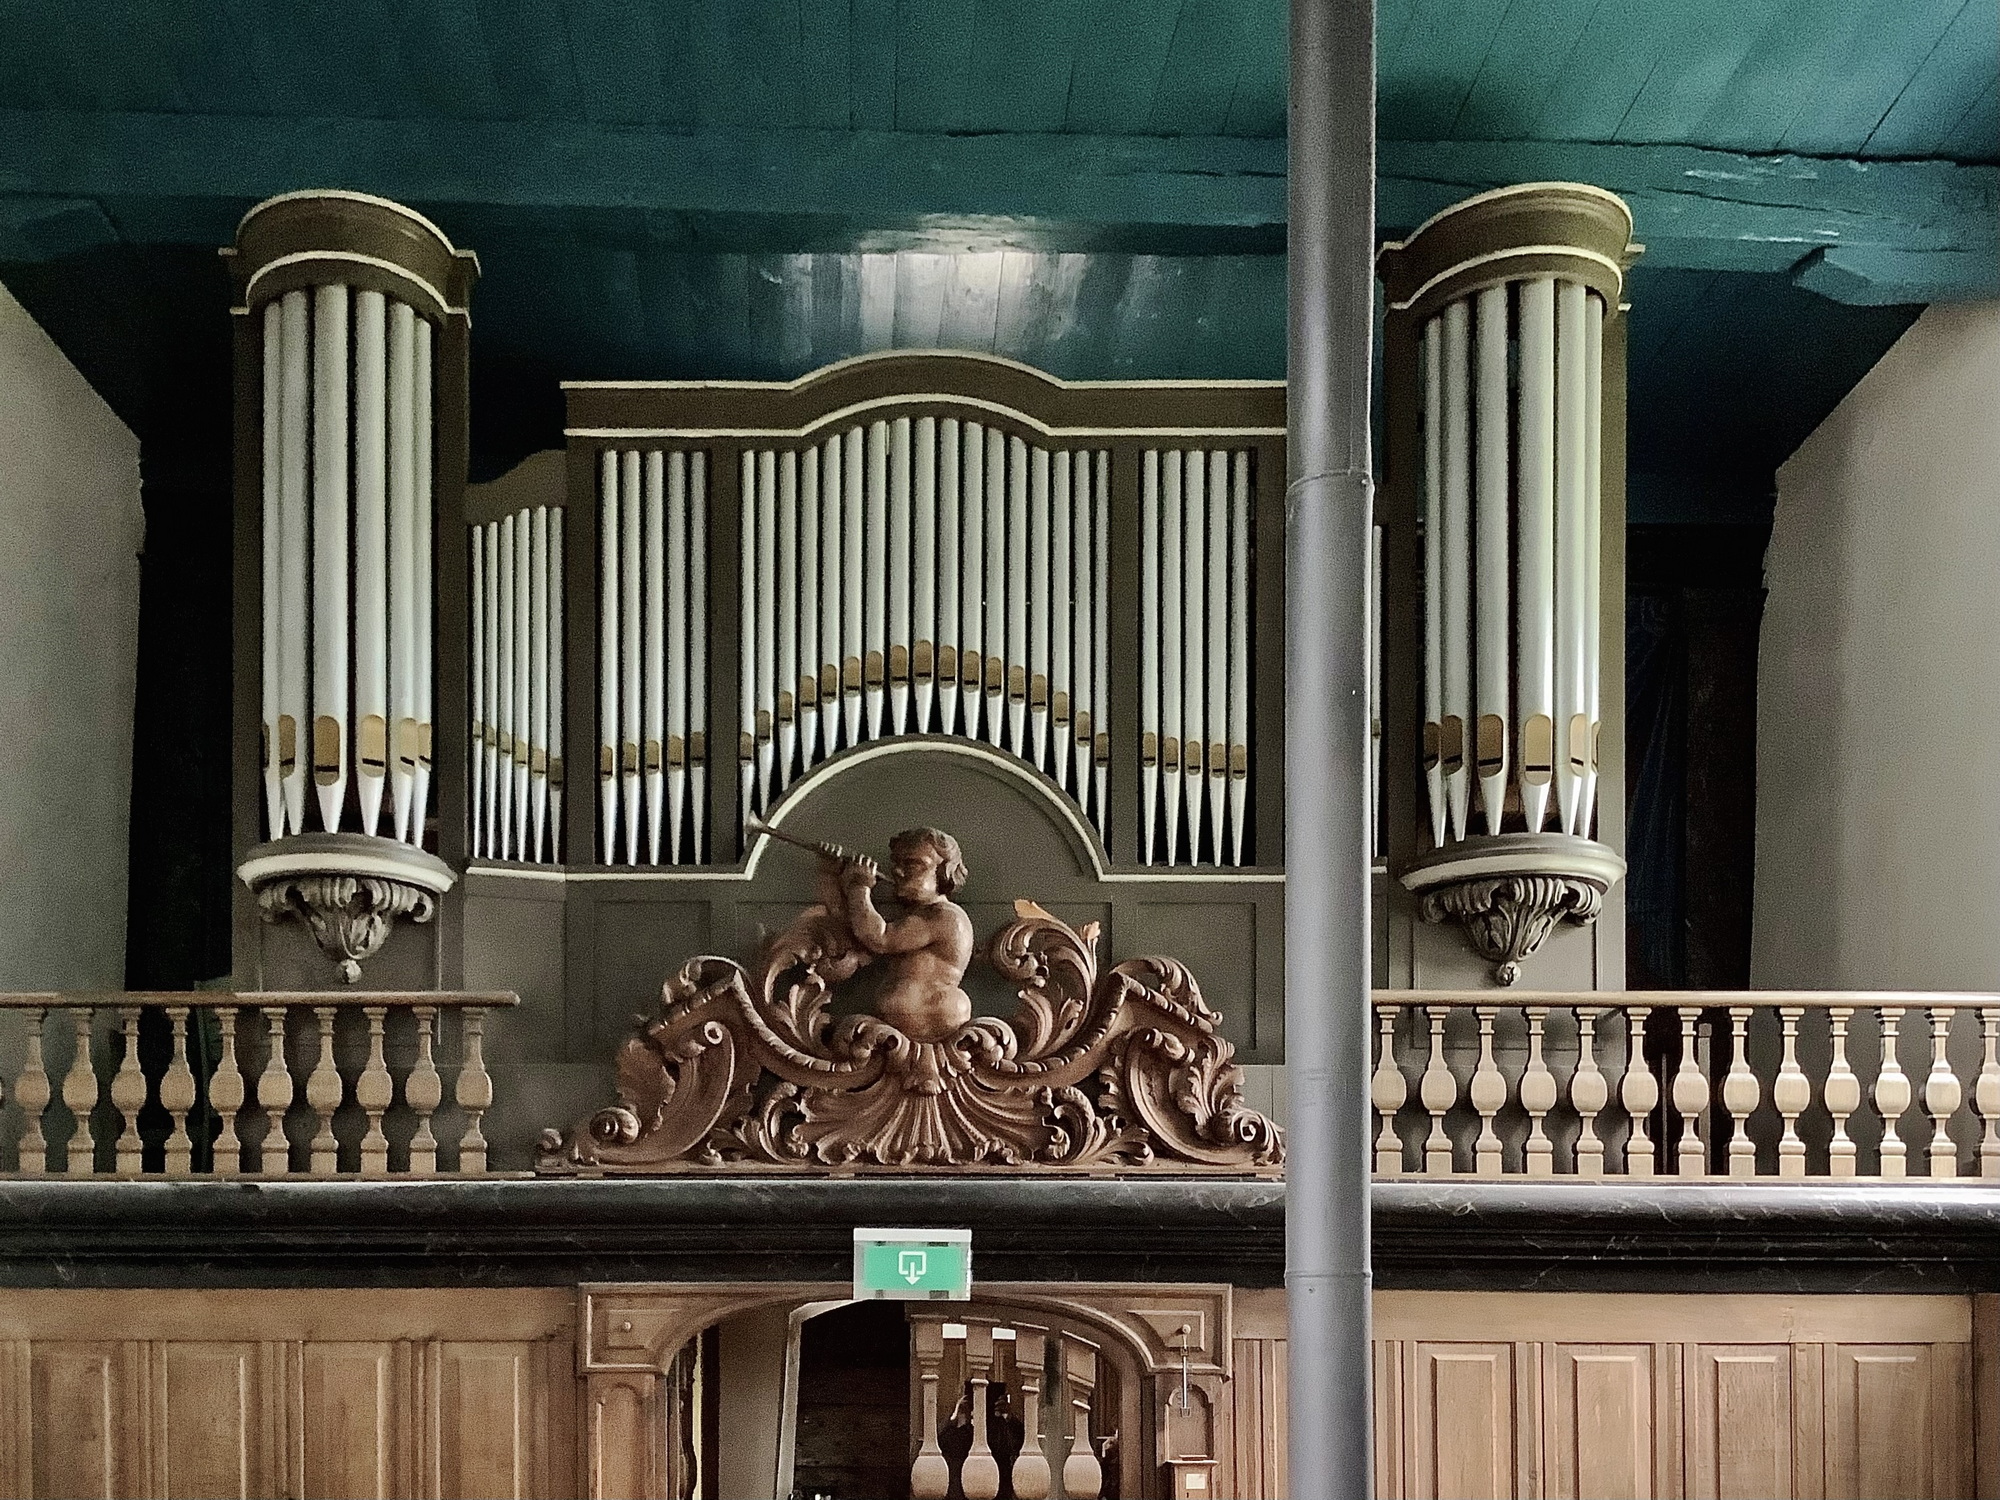 Het orgel gebouwd door Bakker & Timmenga, komt uit de Vermaning in Sint Annaparochie. Onder, in het midden van het orgel, een bazuinende putto, waarschijnlijk gemaakt door Caspar Struiwig. Foto: ©Jur Kuipers